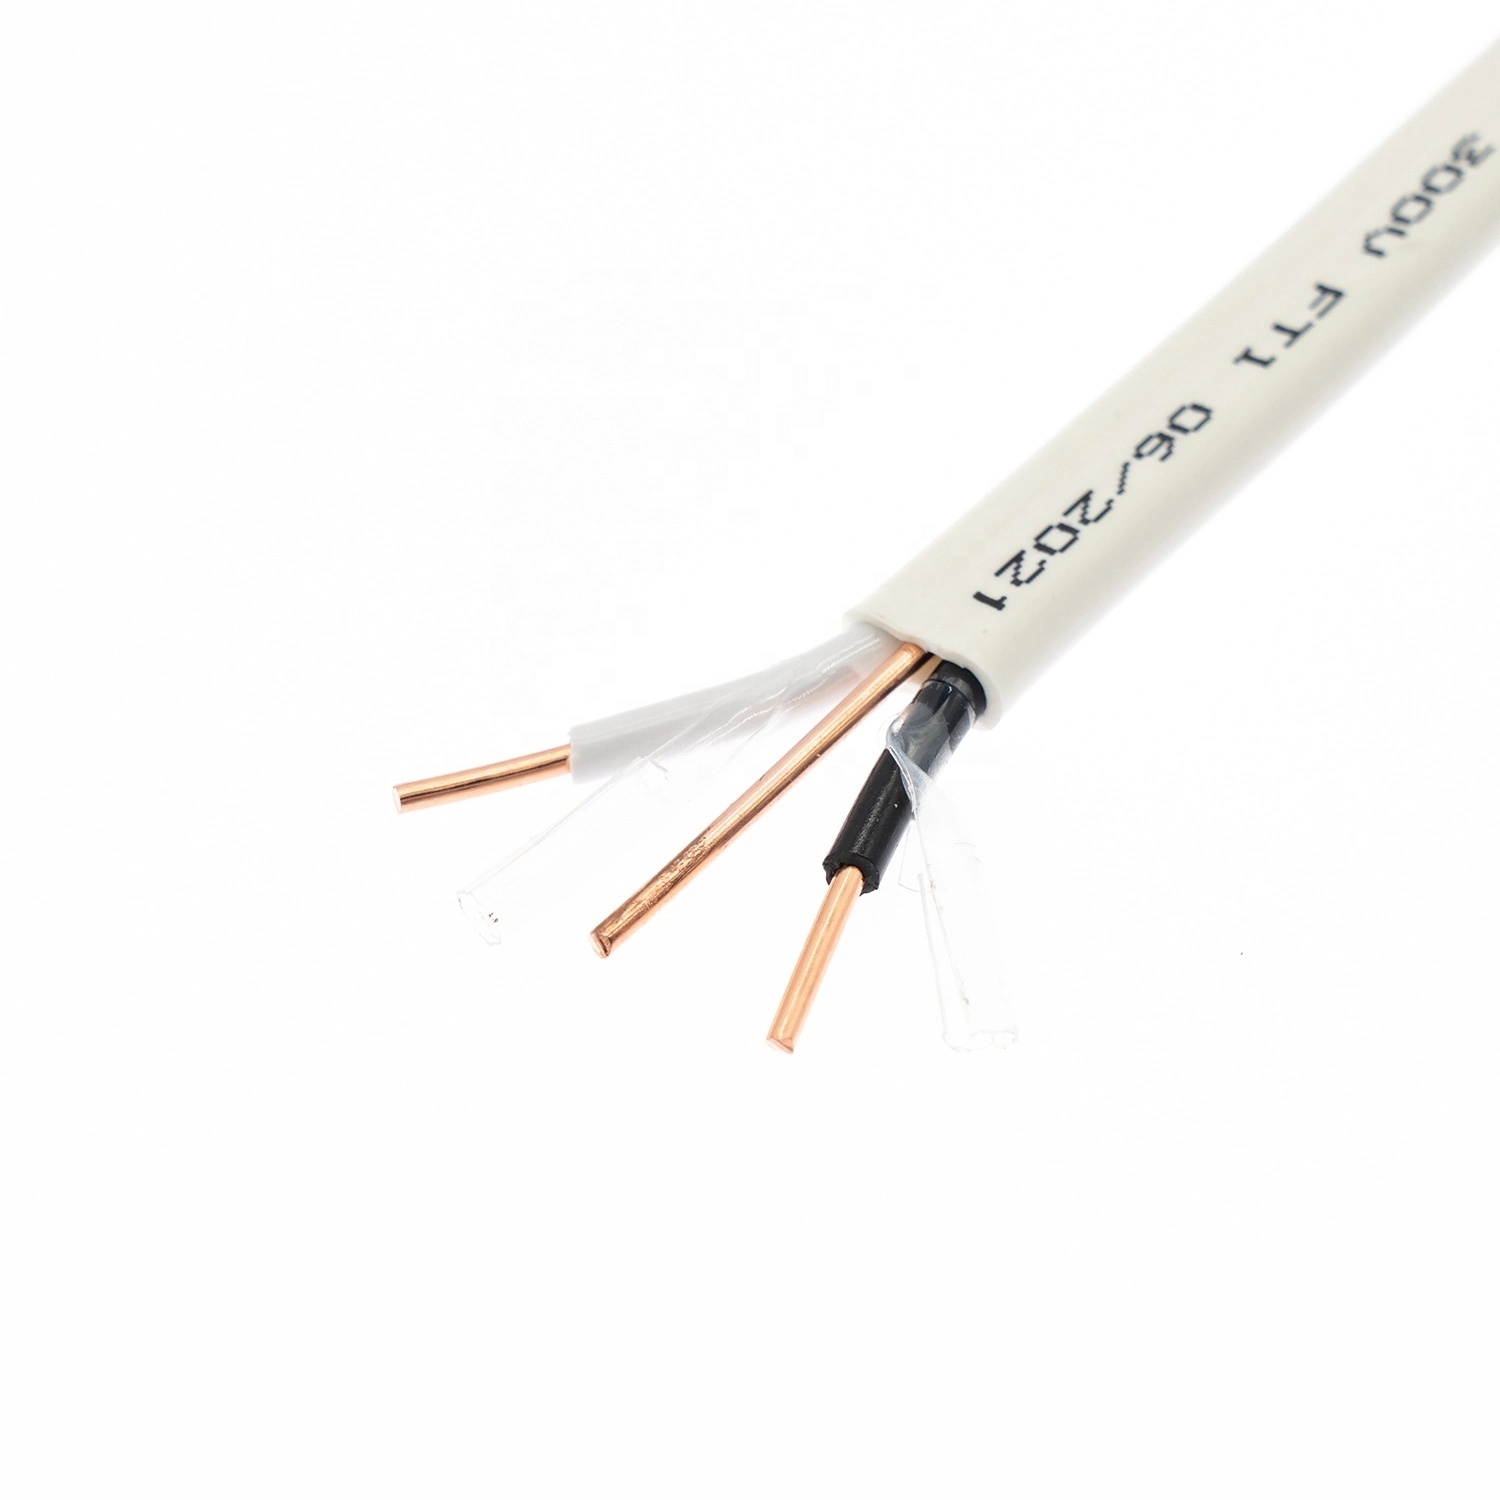 
                Precio barato 14 2 12 2 Cable Conductor de cobre eléctrico estándar canadiense 6/3 Nmd90 Cable 150m rollo Rollo de 75m
            